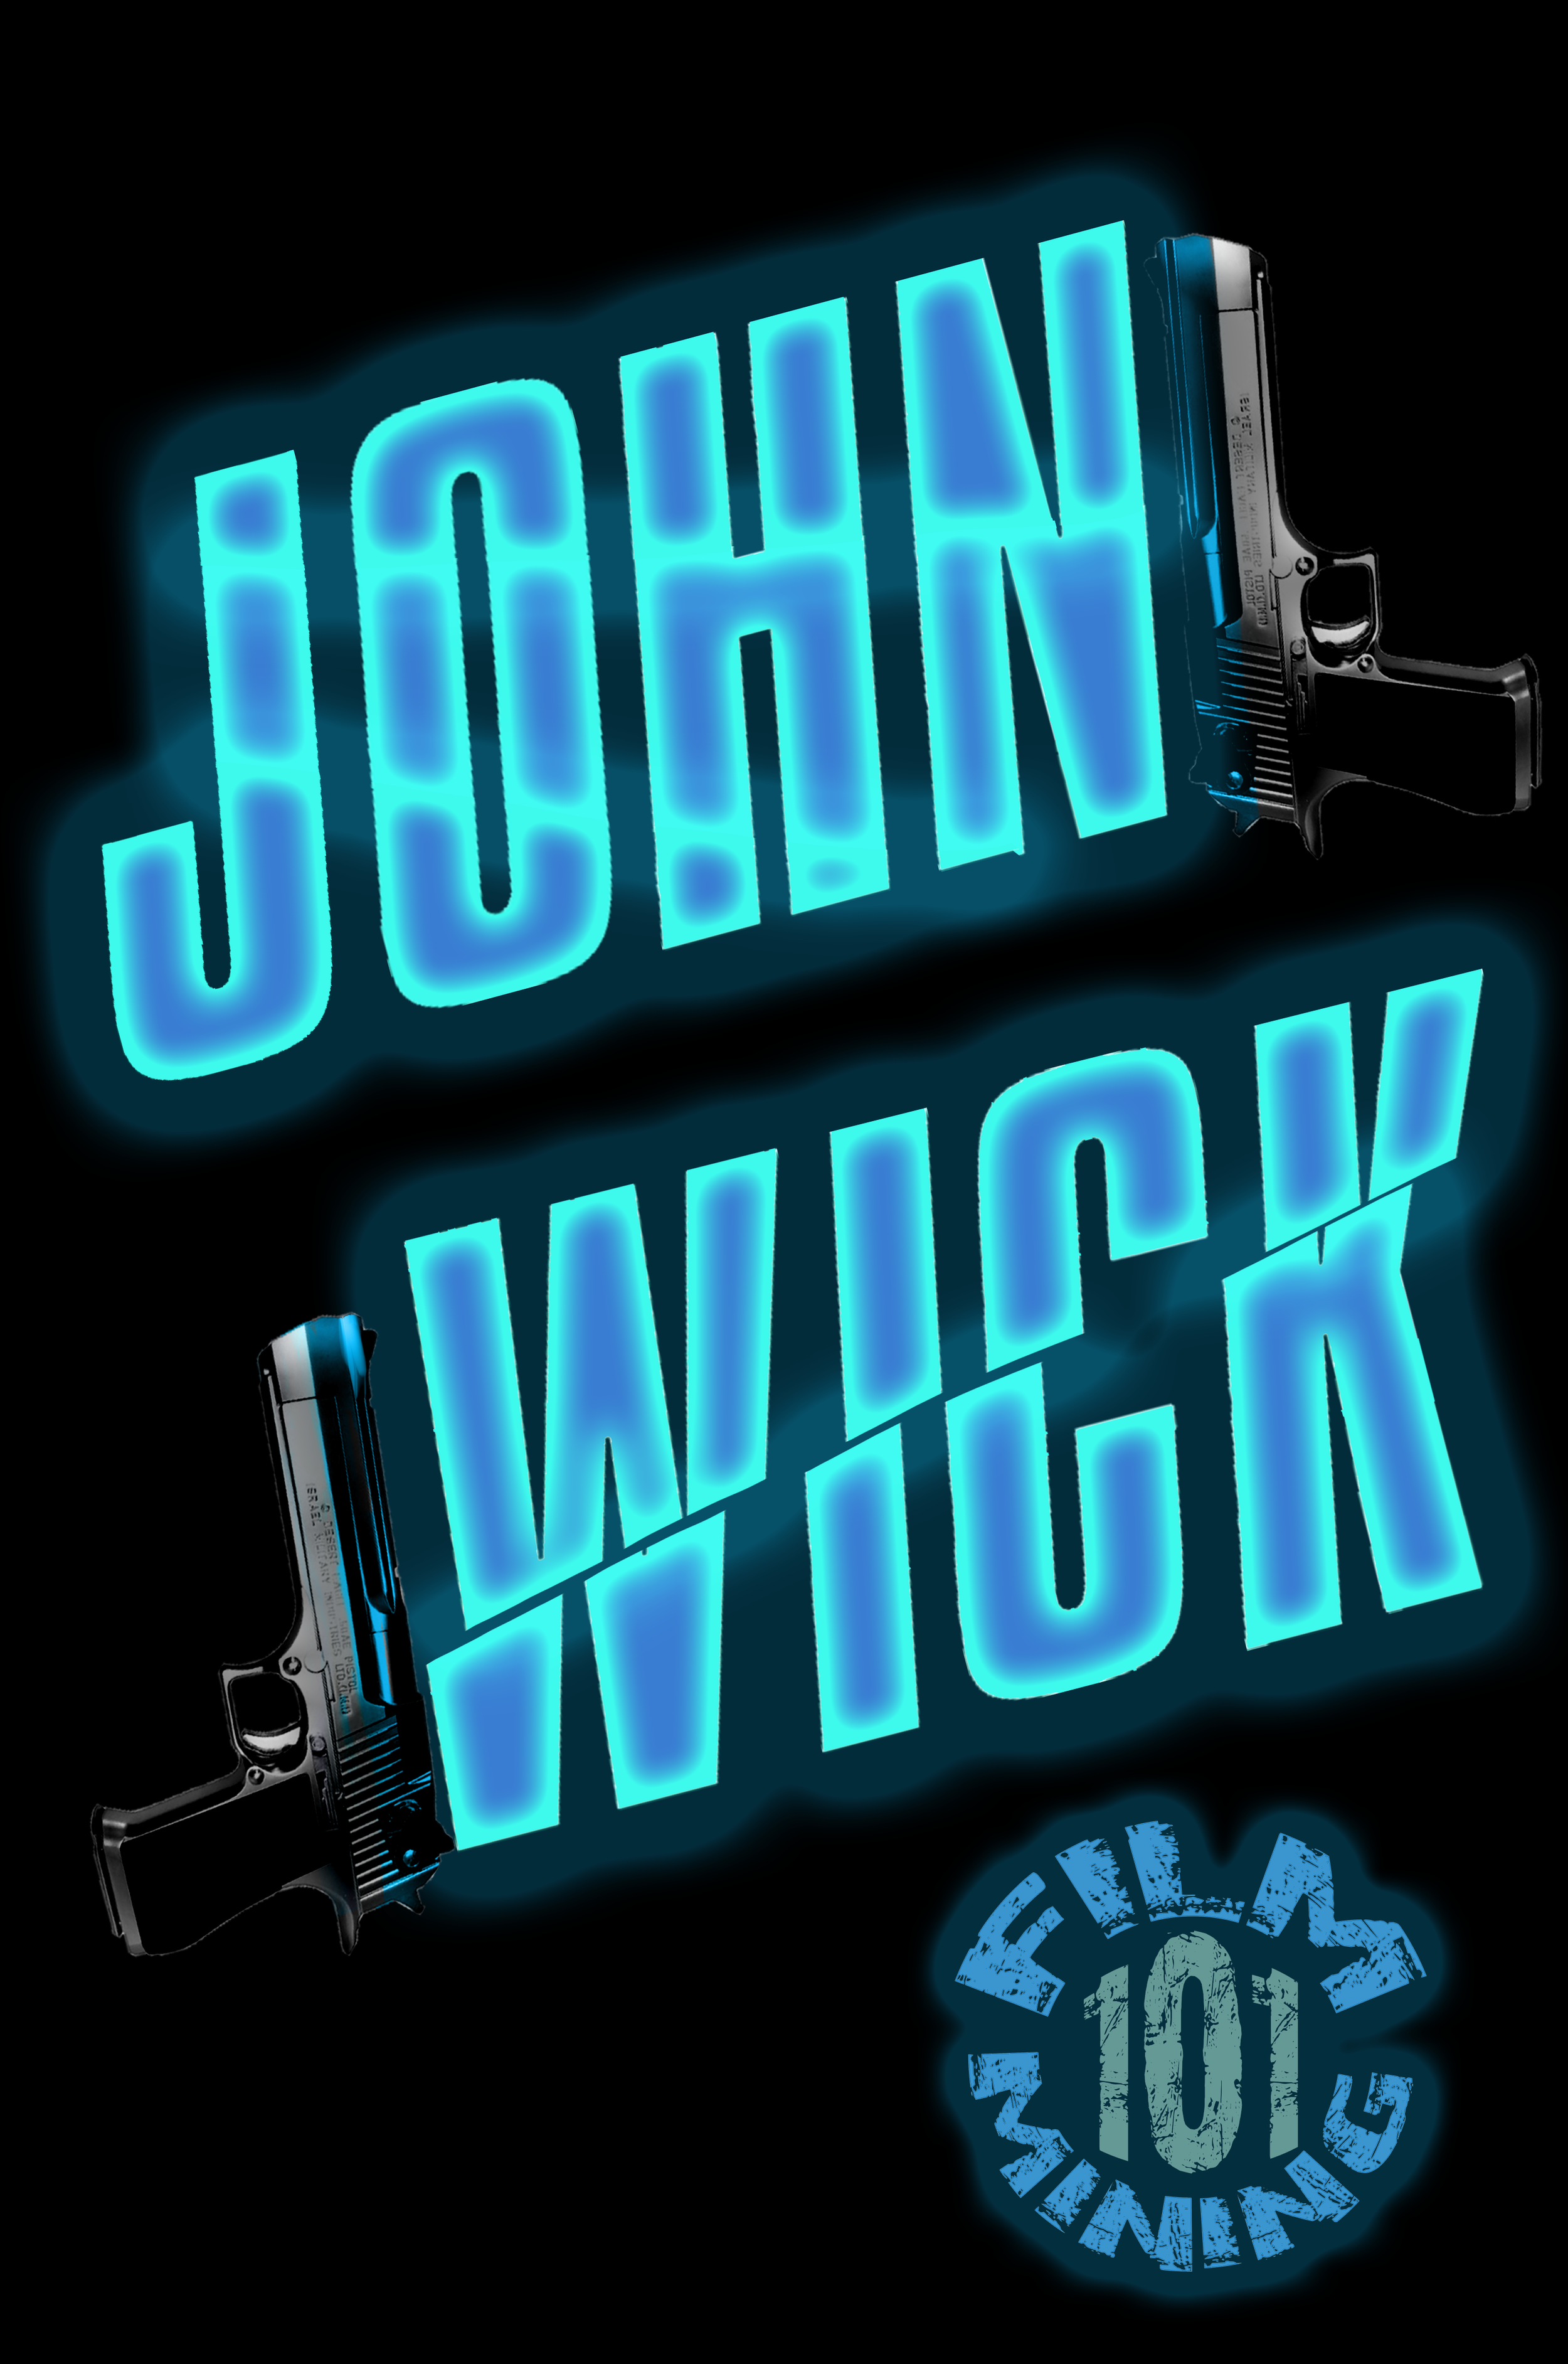 John Wick (2014), Movie News & Review